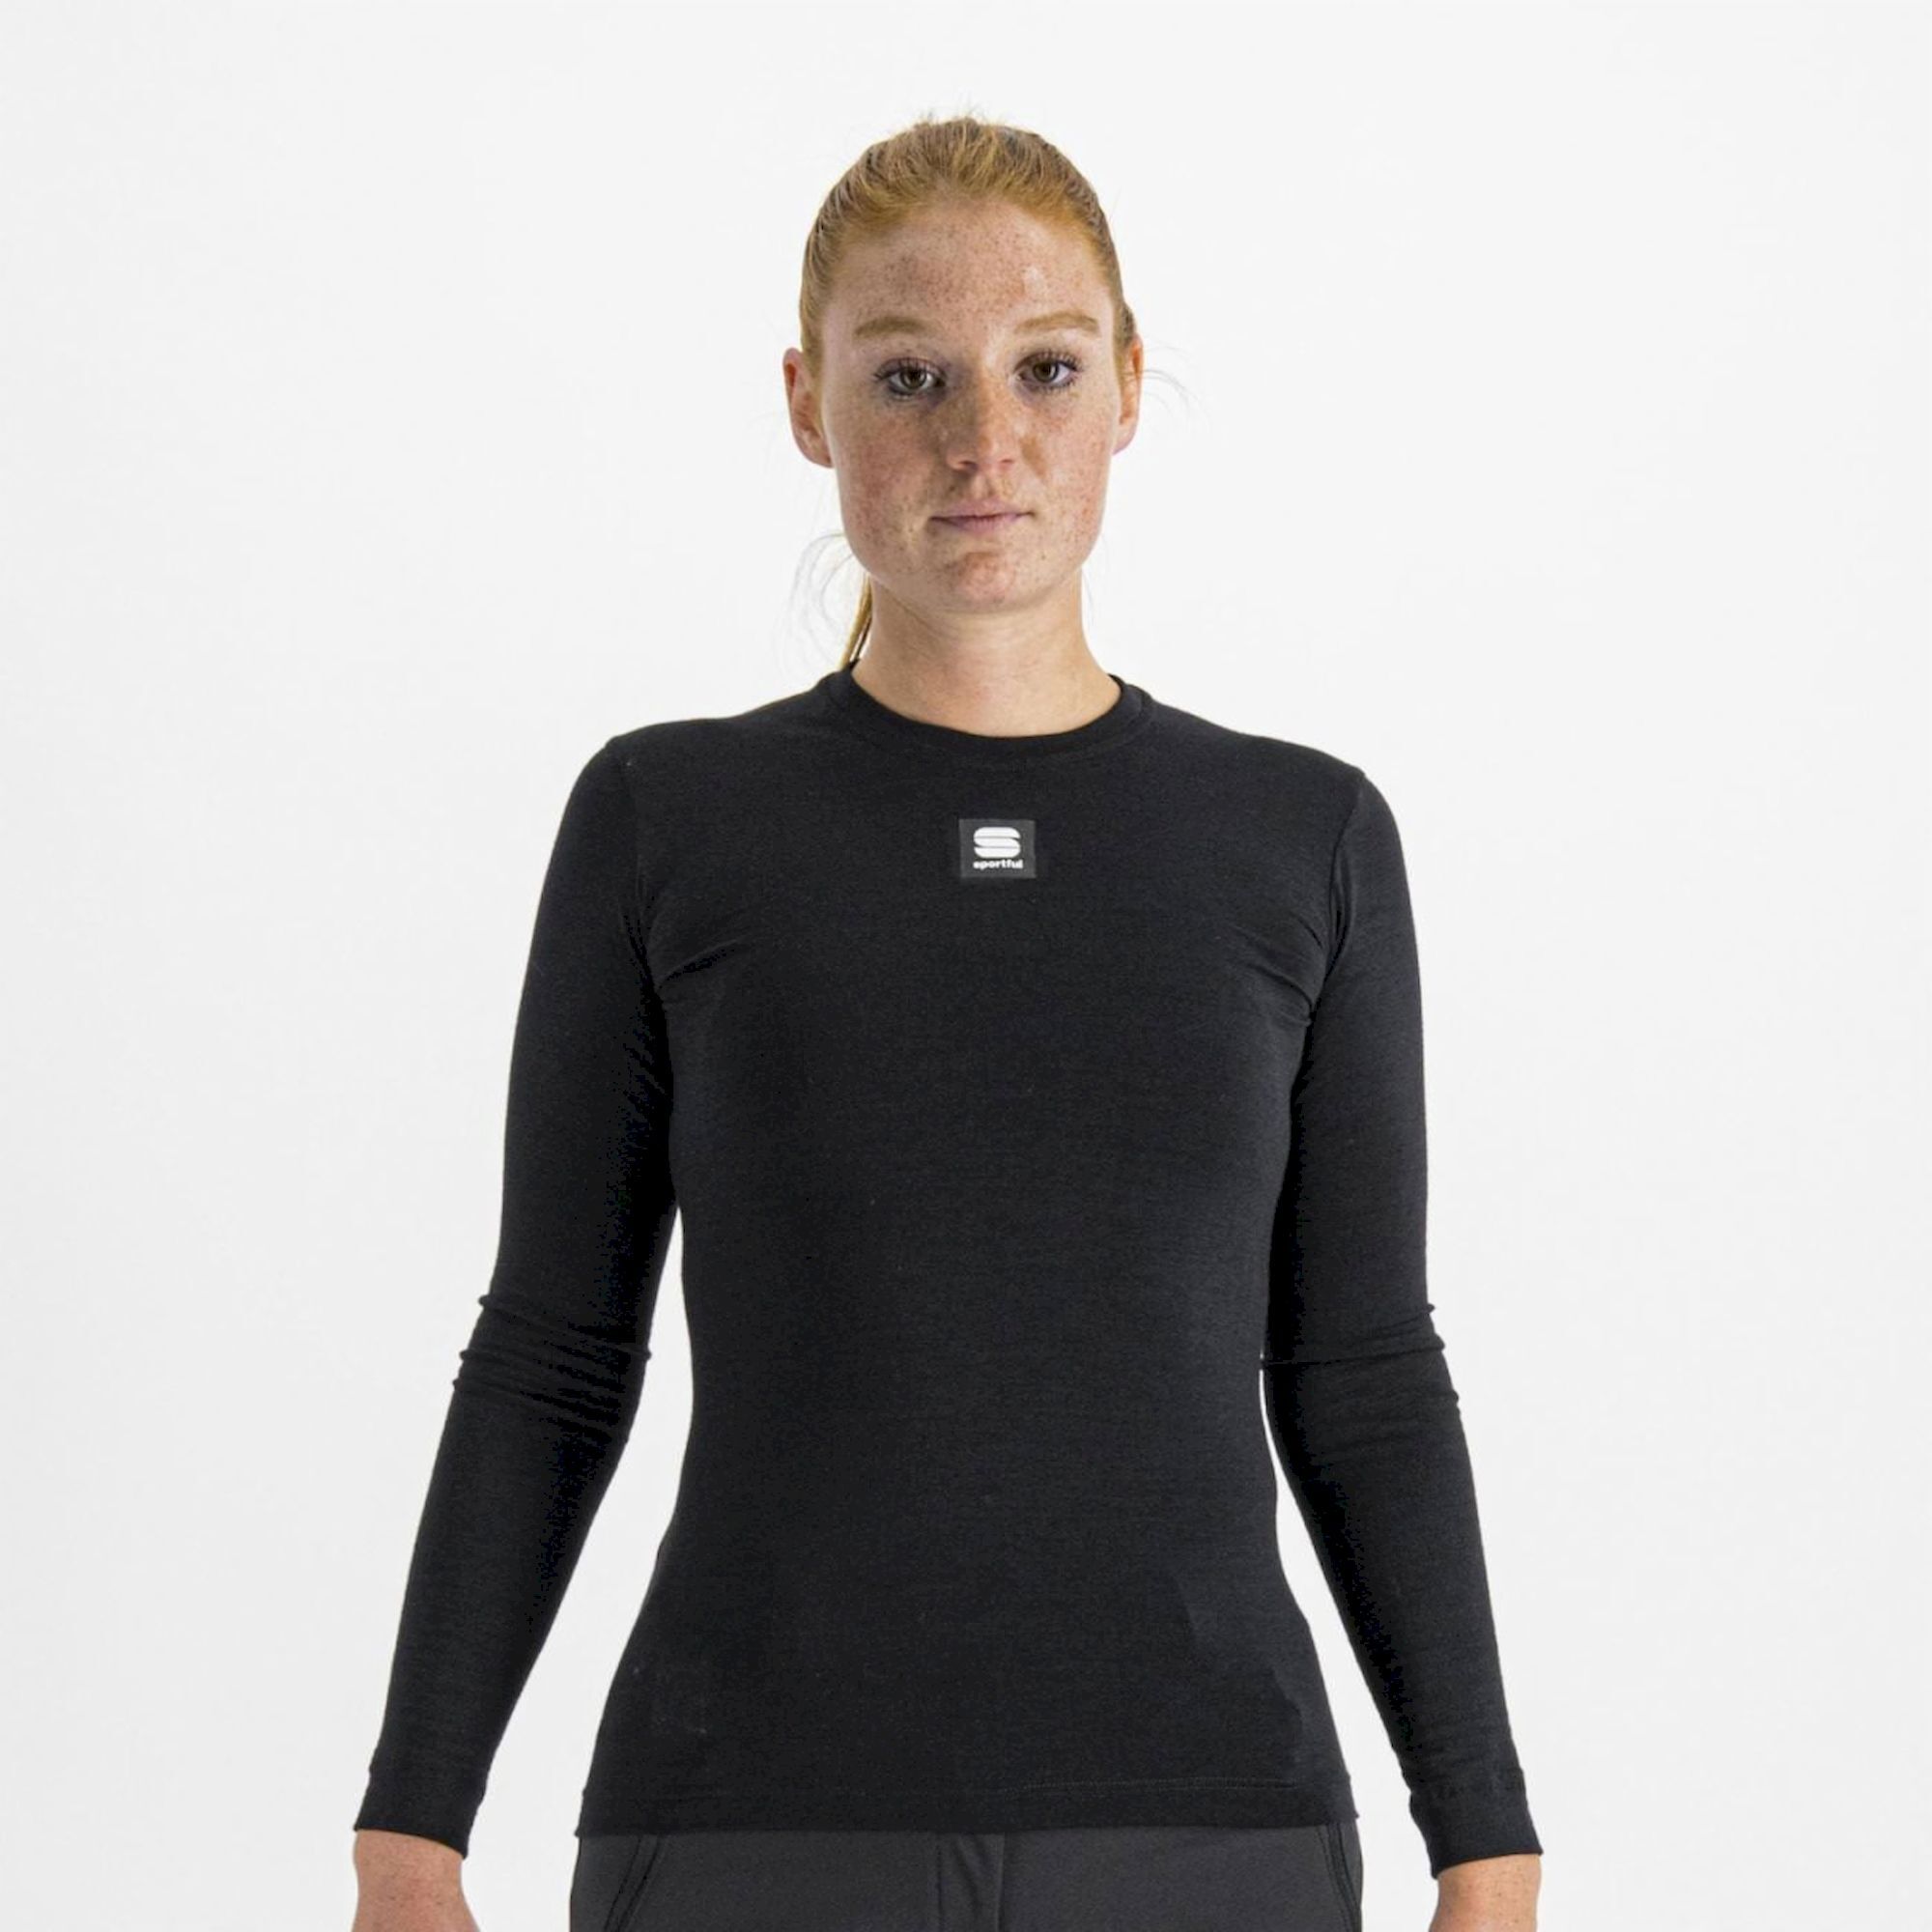 Sportful Women's Merino Tee Long Sleeve - Sous-vêtement thermique femme